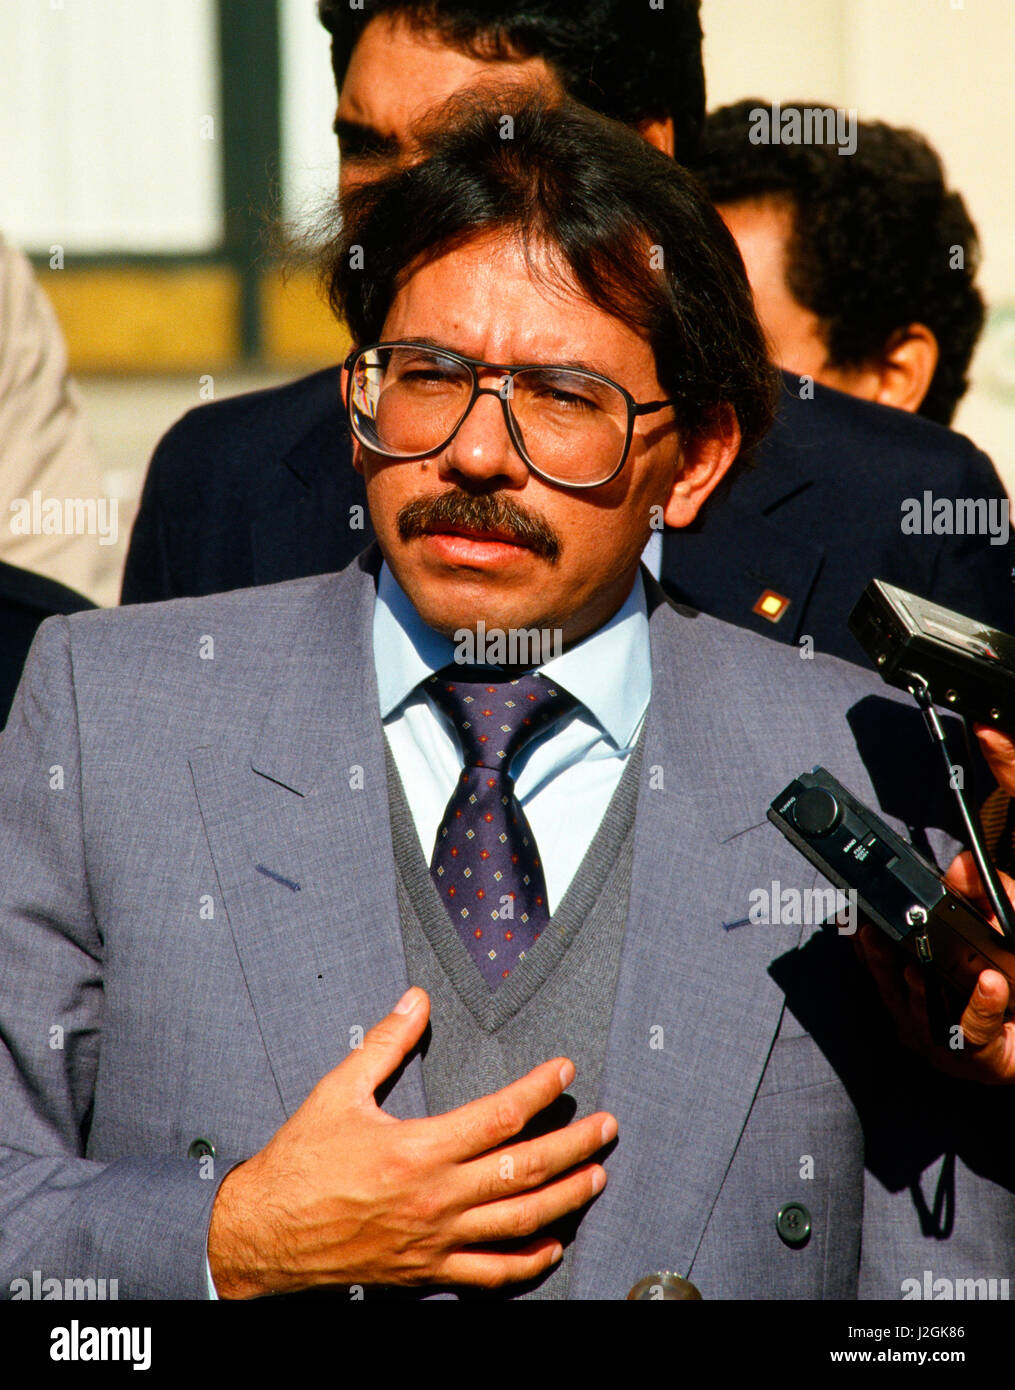 Daniel Ortega, President of Nicaragua in November 1987. Stock Photo